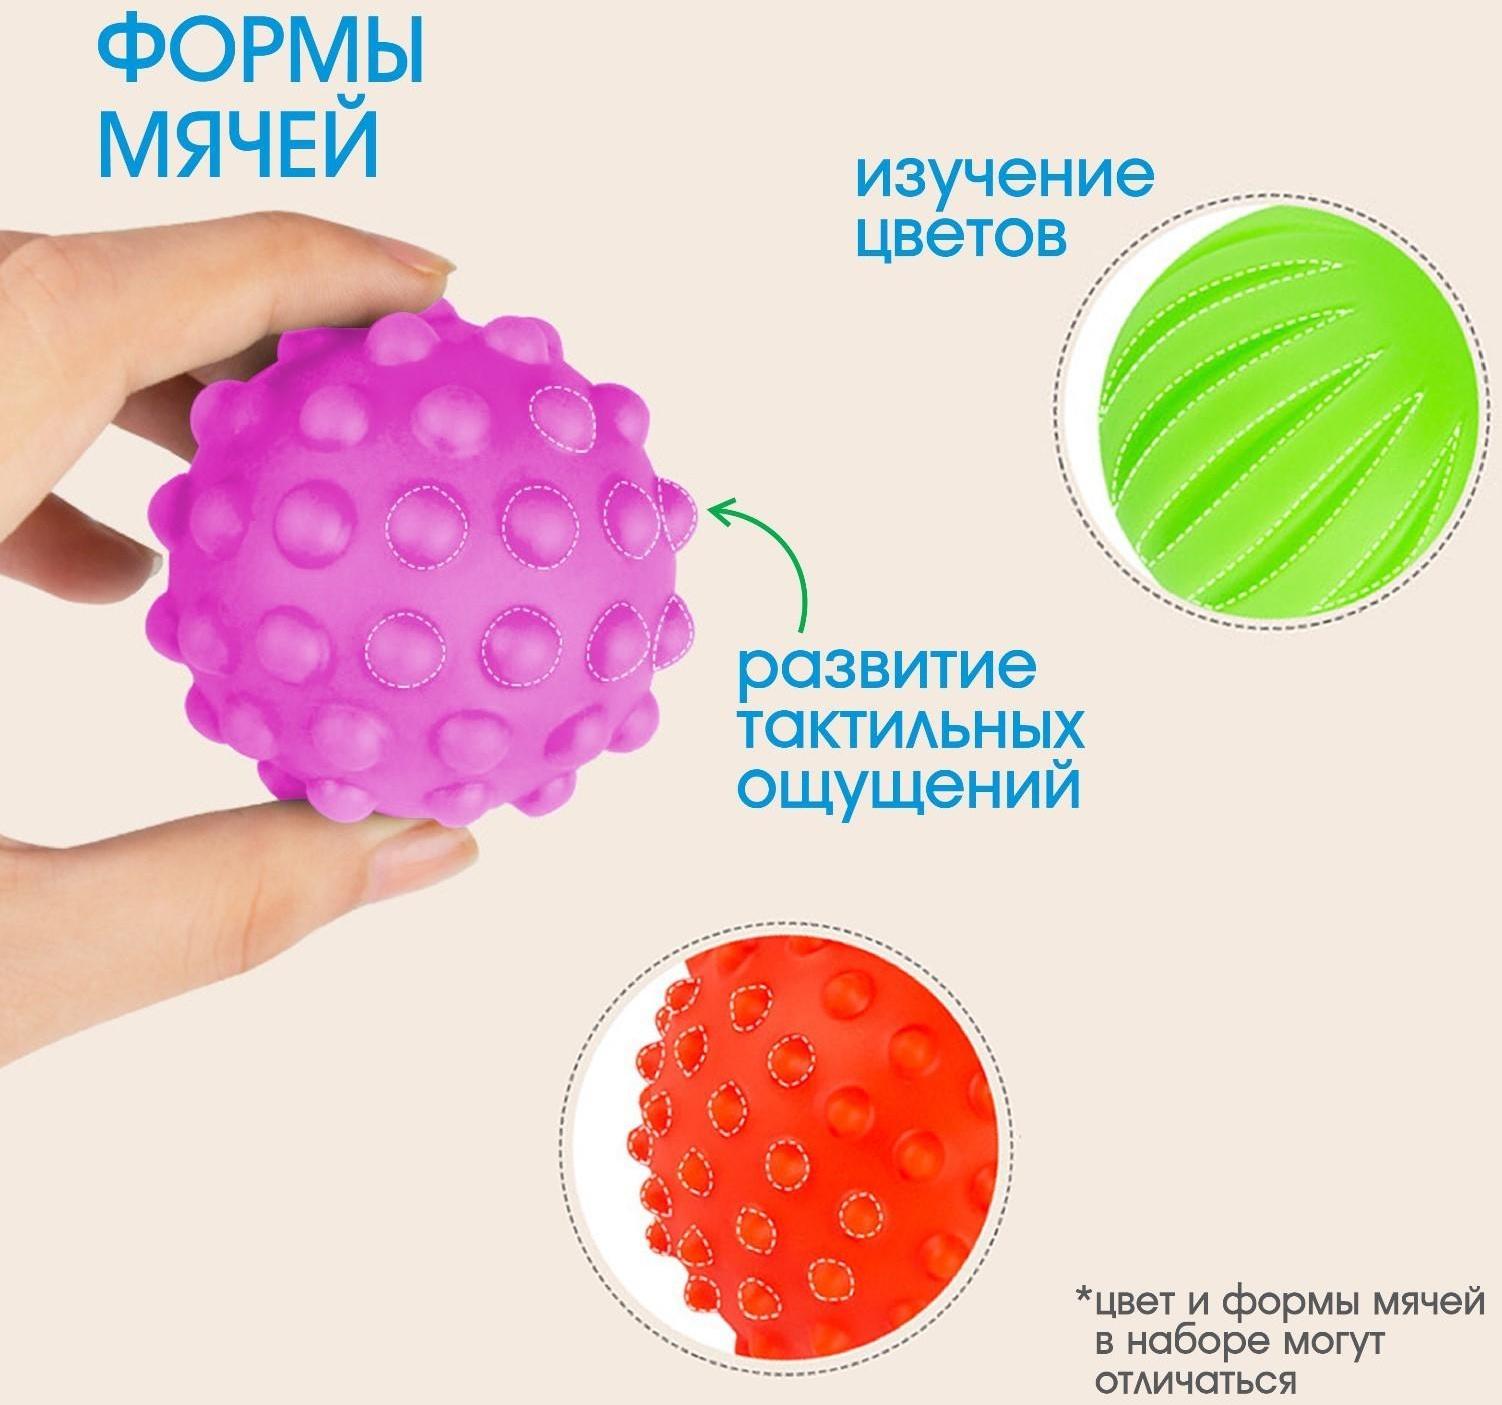 Подарочный набор массажных развивающих мячиков «Малыши-кругляши», 3 шт.